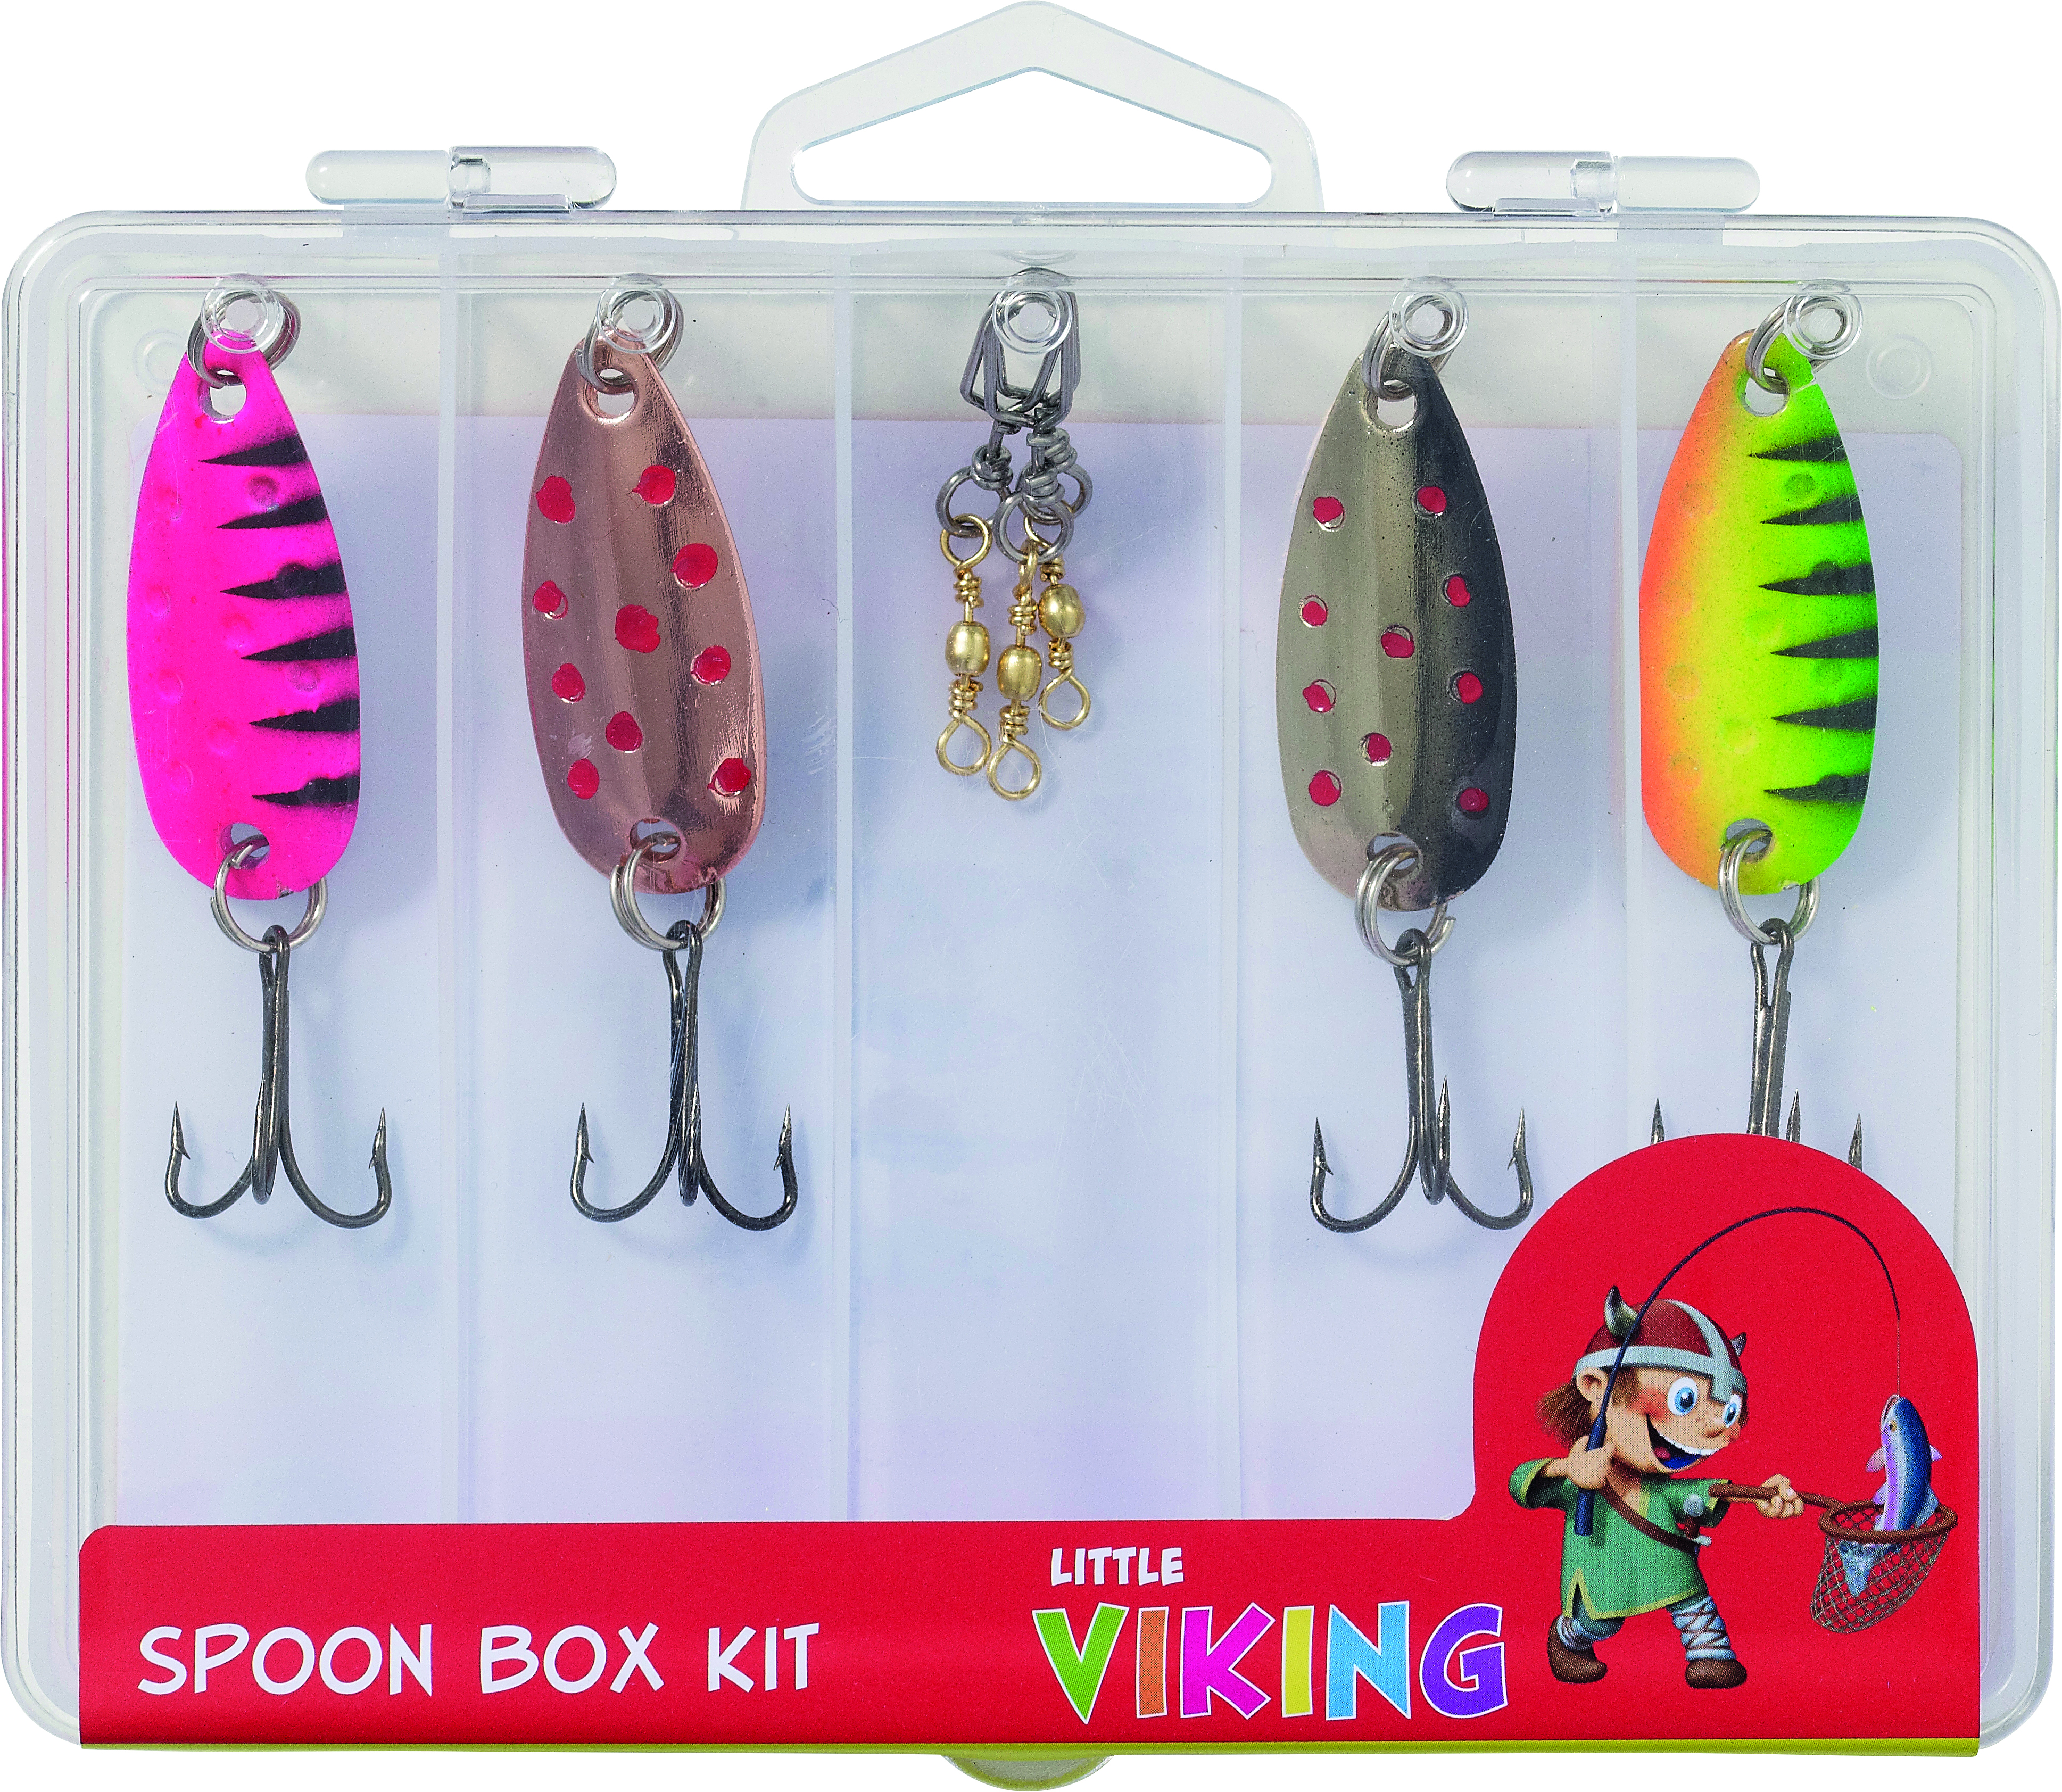 Spoon Box Kit For Kids Little Viking